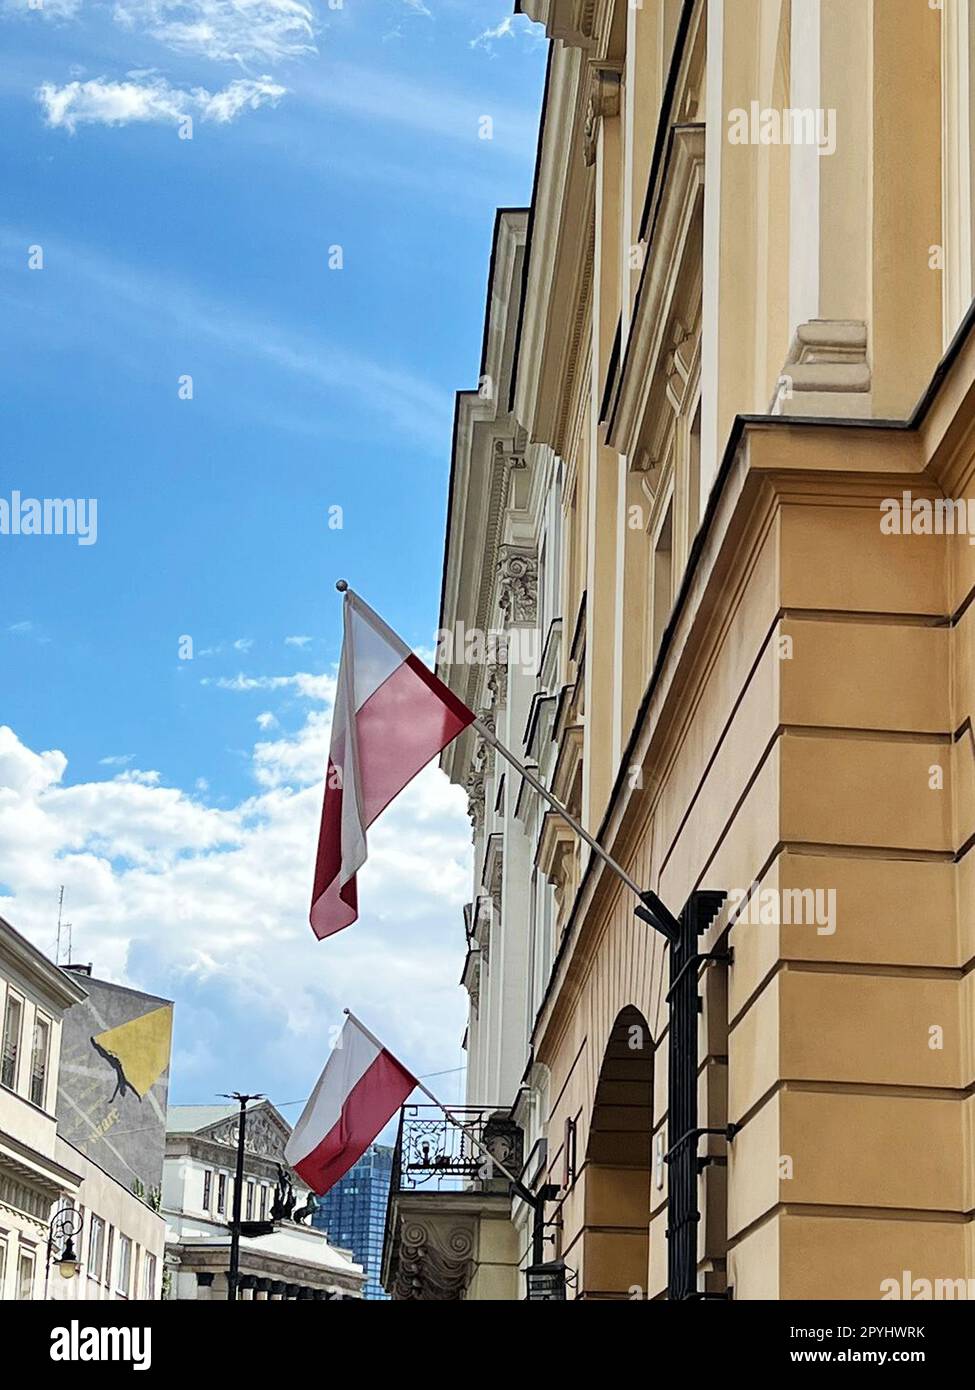 VARSOVIE, POLOGNE - 17 JUILLET 2022 : façade de bâtiment avec drapeaux le jour ensoleillé Banque D'Images